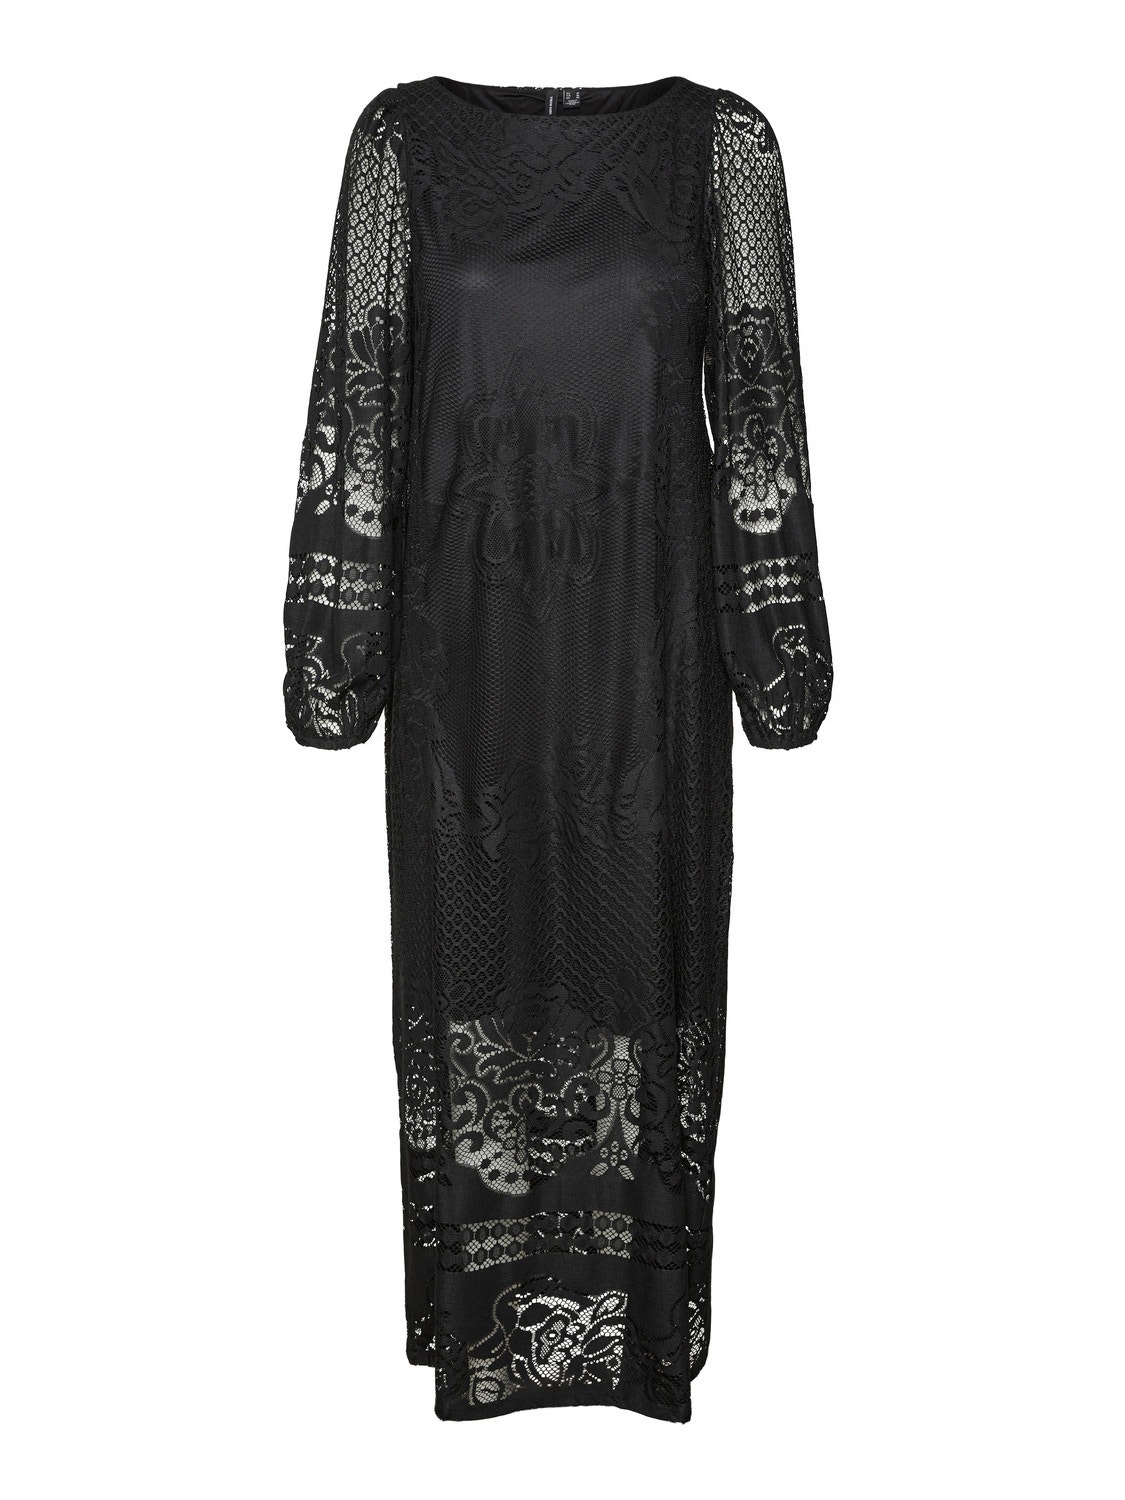 Vero Moda VMBELLA Long dress -Black - 10308536